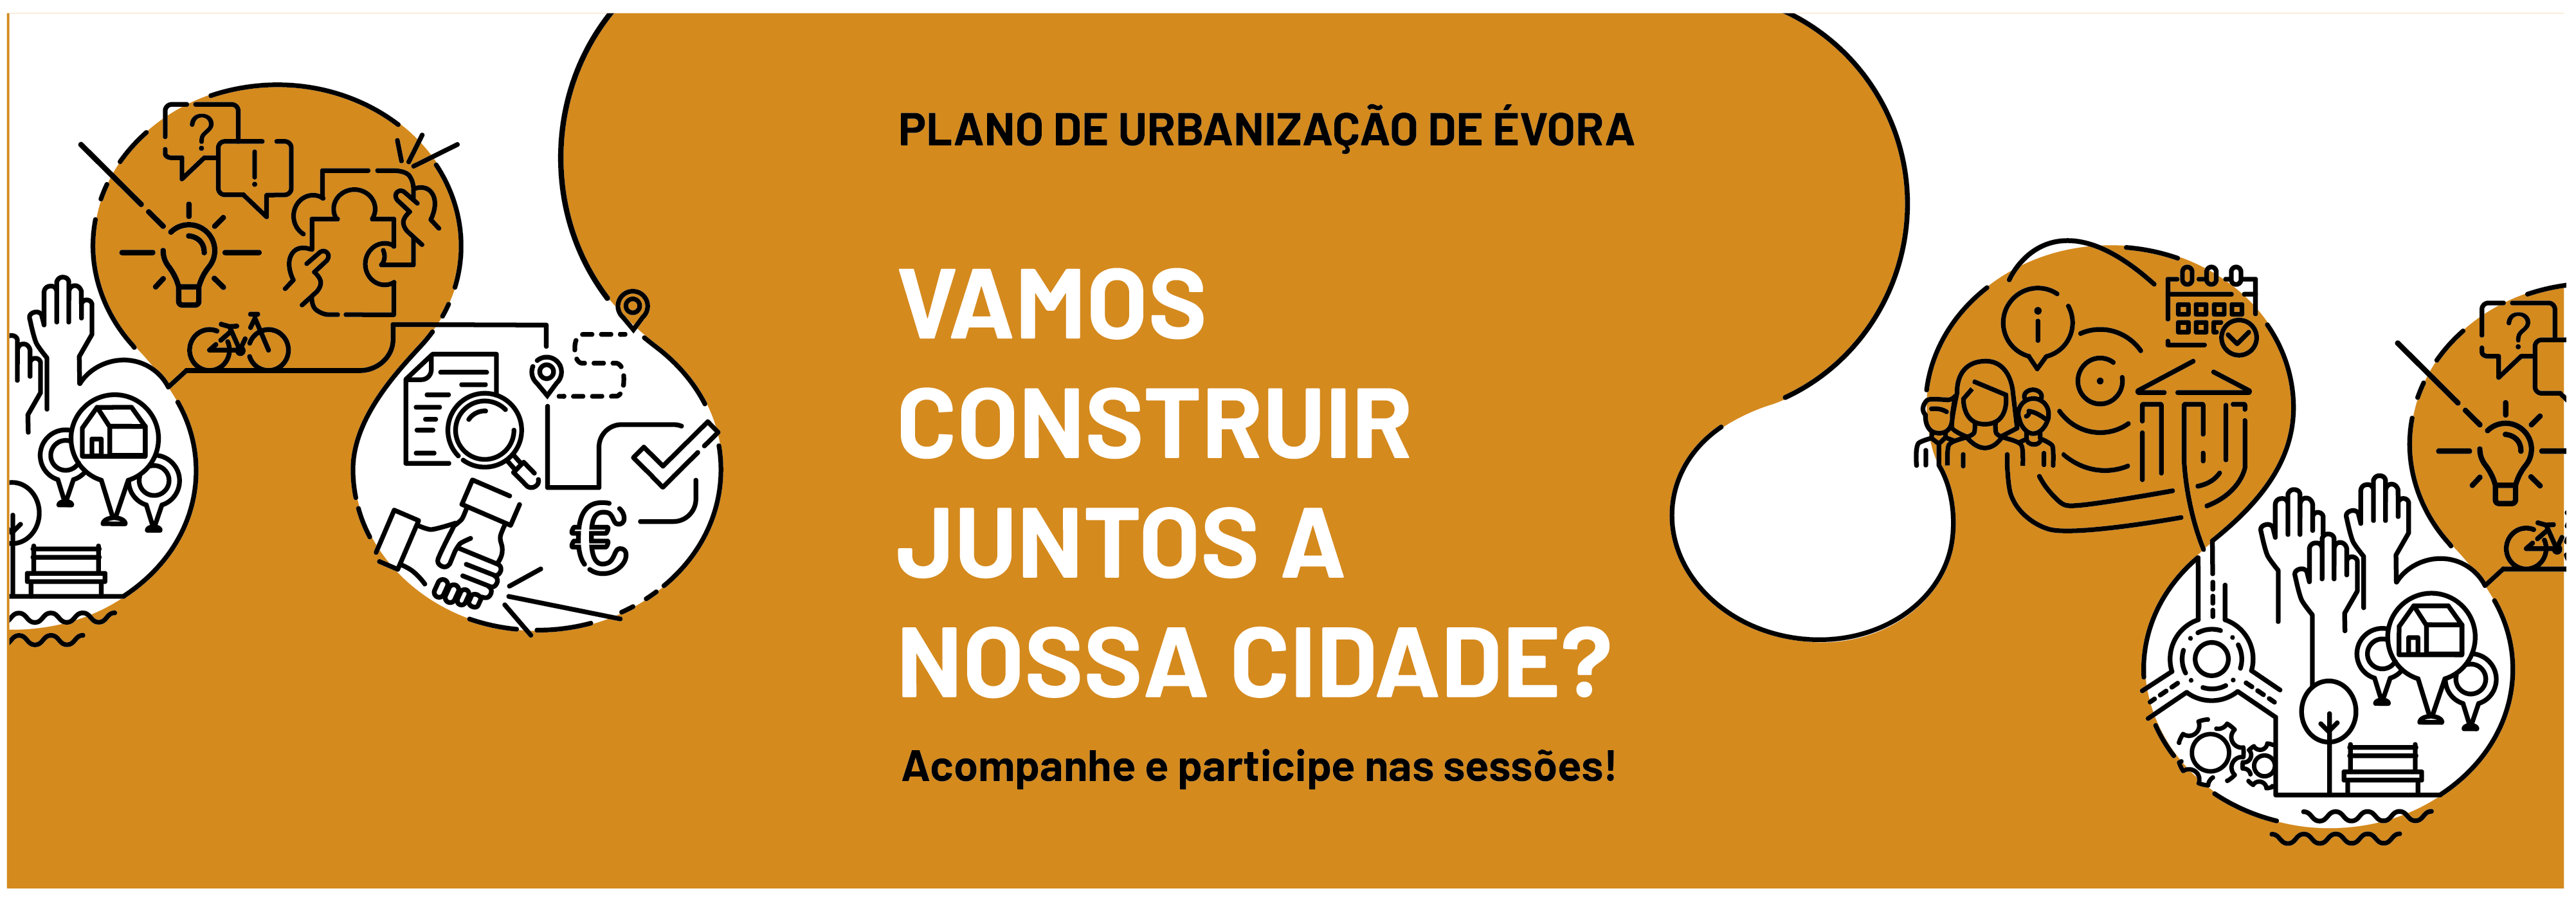 Plano de Urbanização de Évora